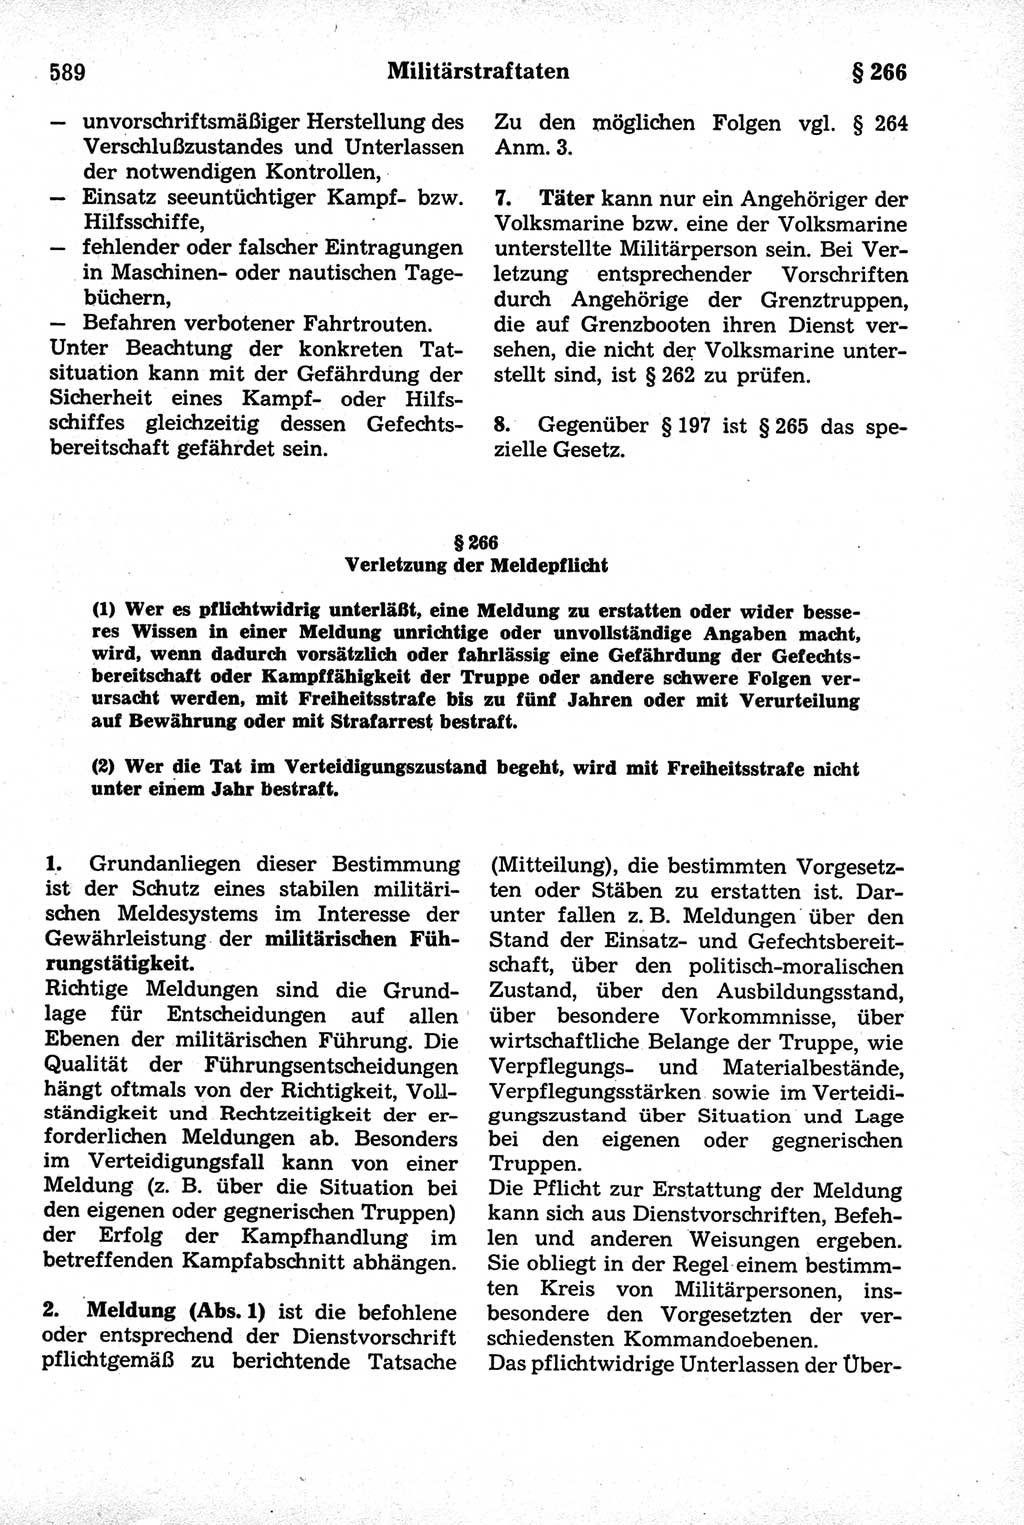 Strafrecht der Deutschen Demokratischen Republik (DDR), Kommentar zum Strafgesetzbuch (StGB) 1981, Seite 589 (Strafr. DDR Komm. StGB 1981, S. 589)